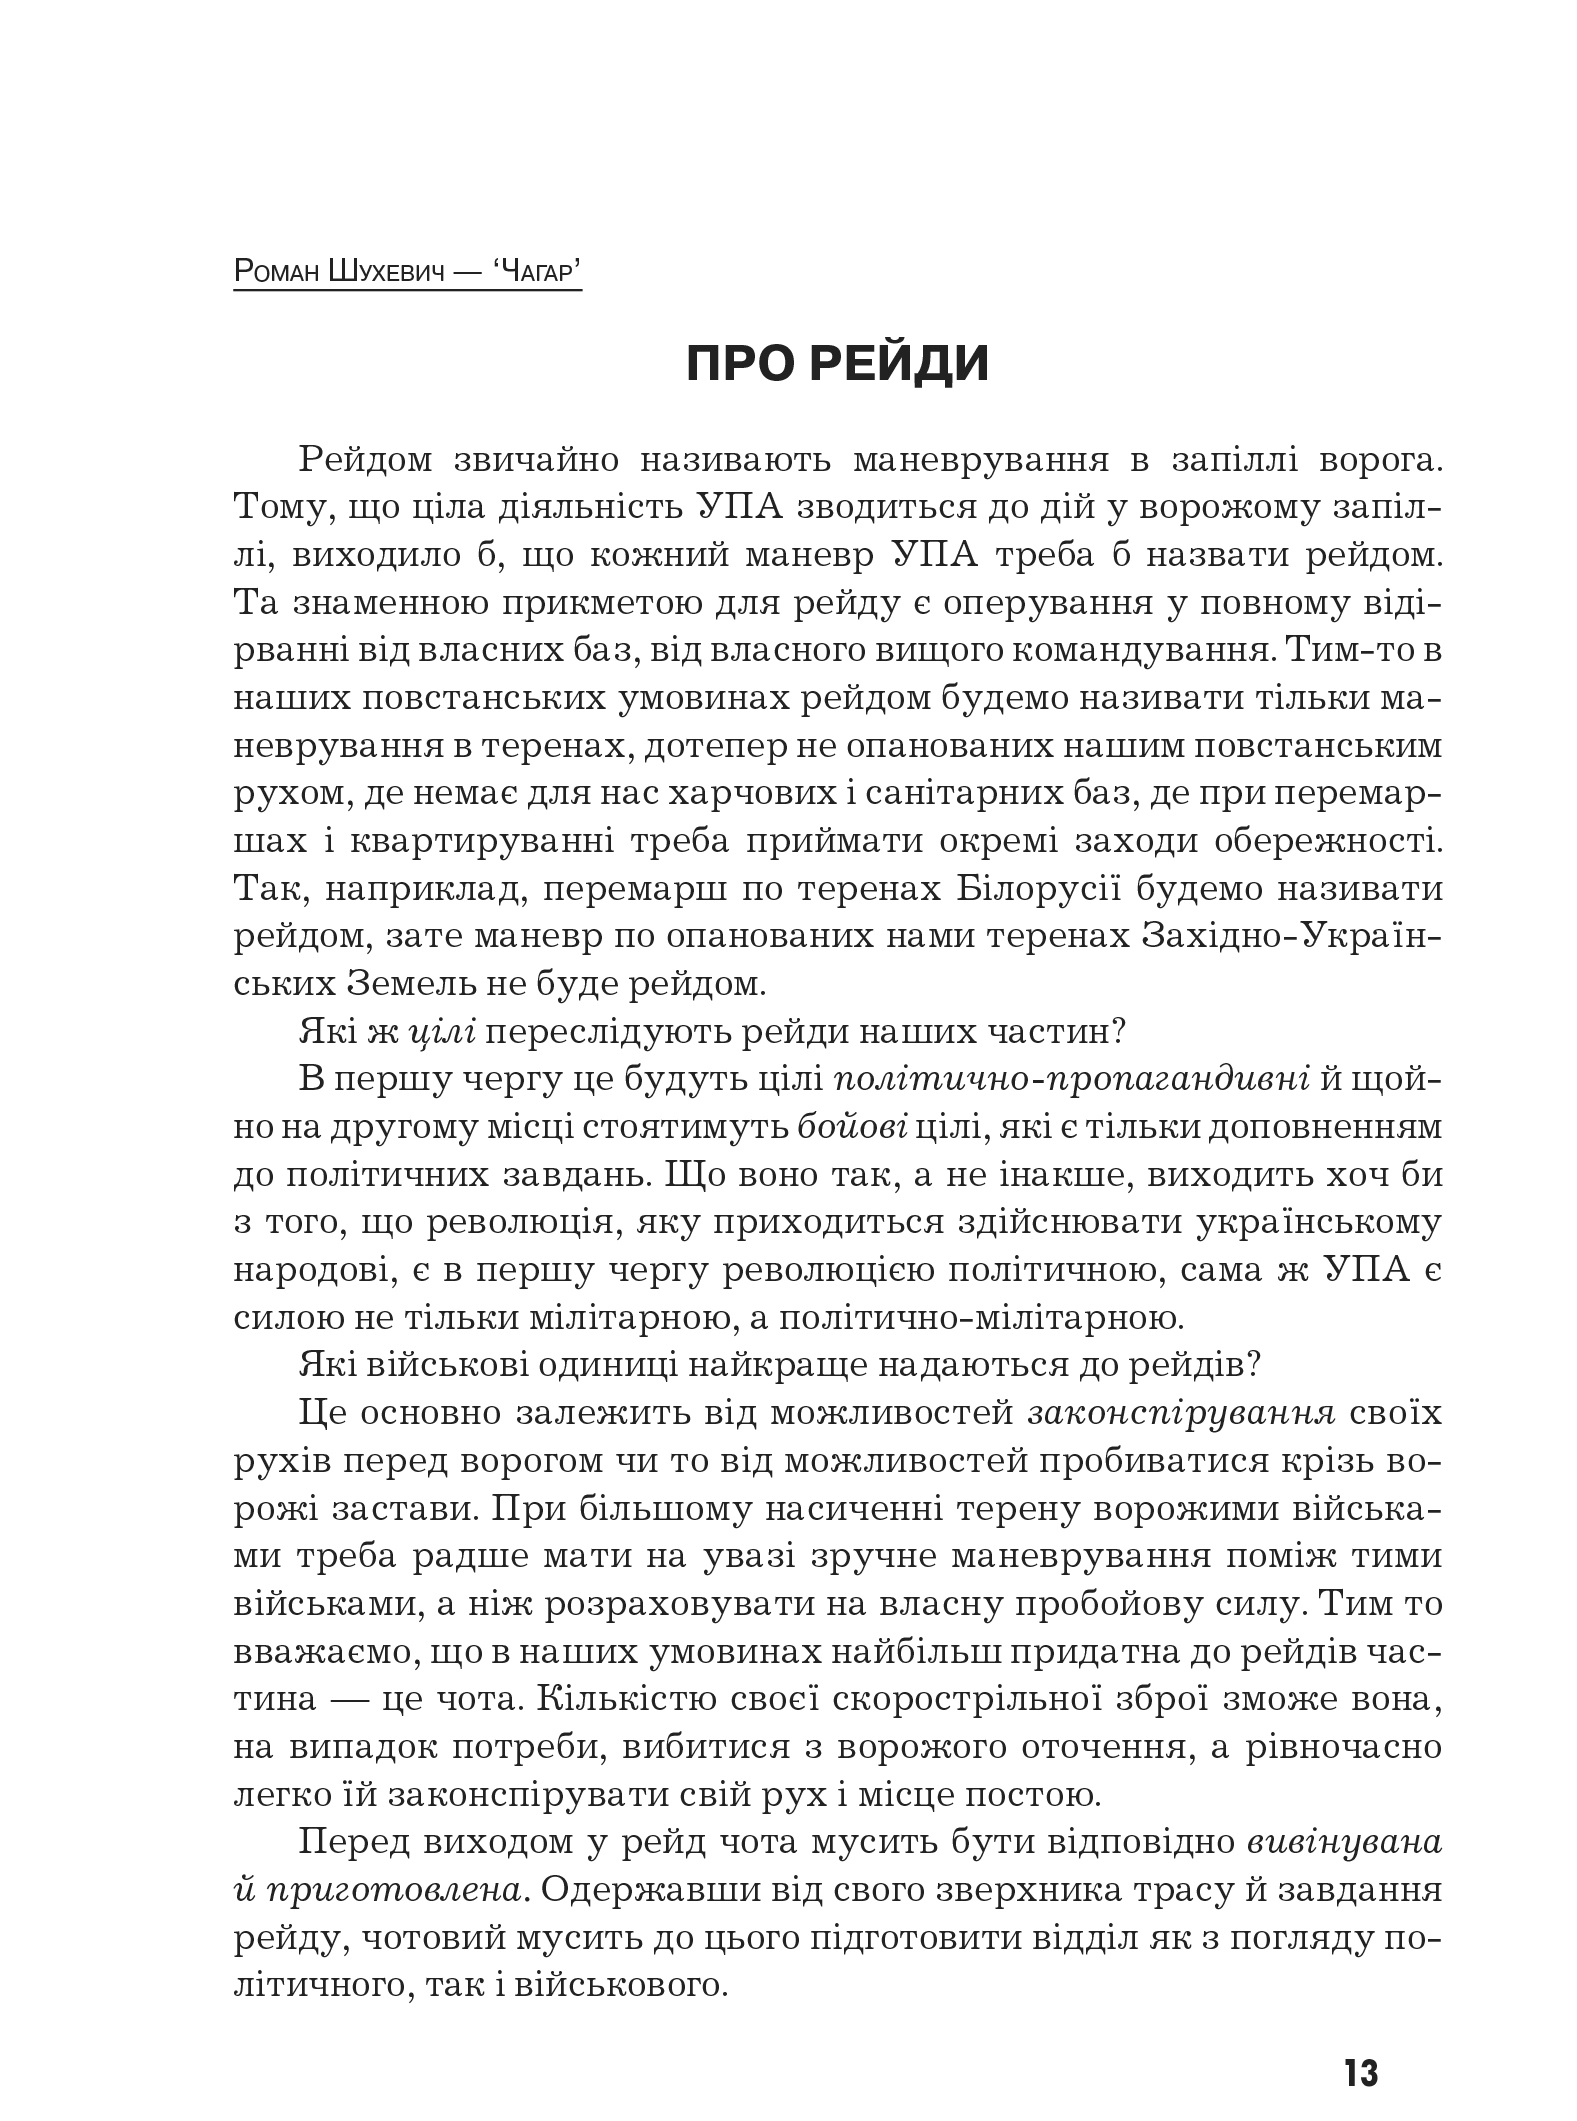 Український визвольний рух №10, ст. 13 - 17